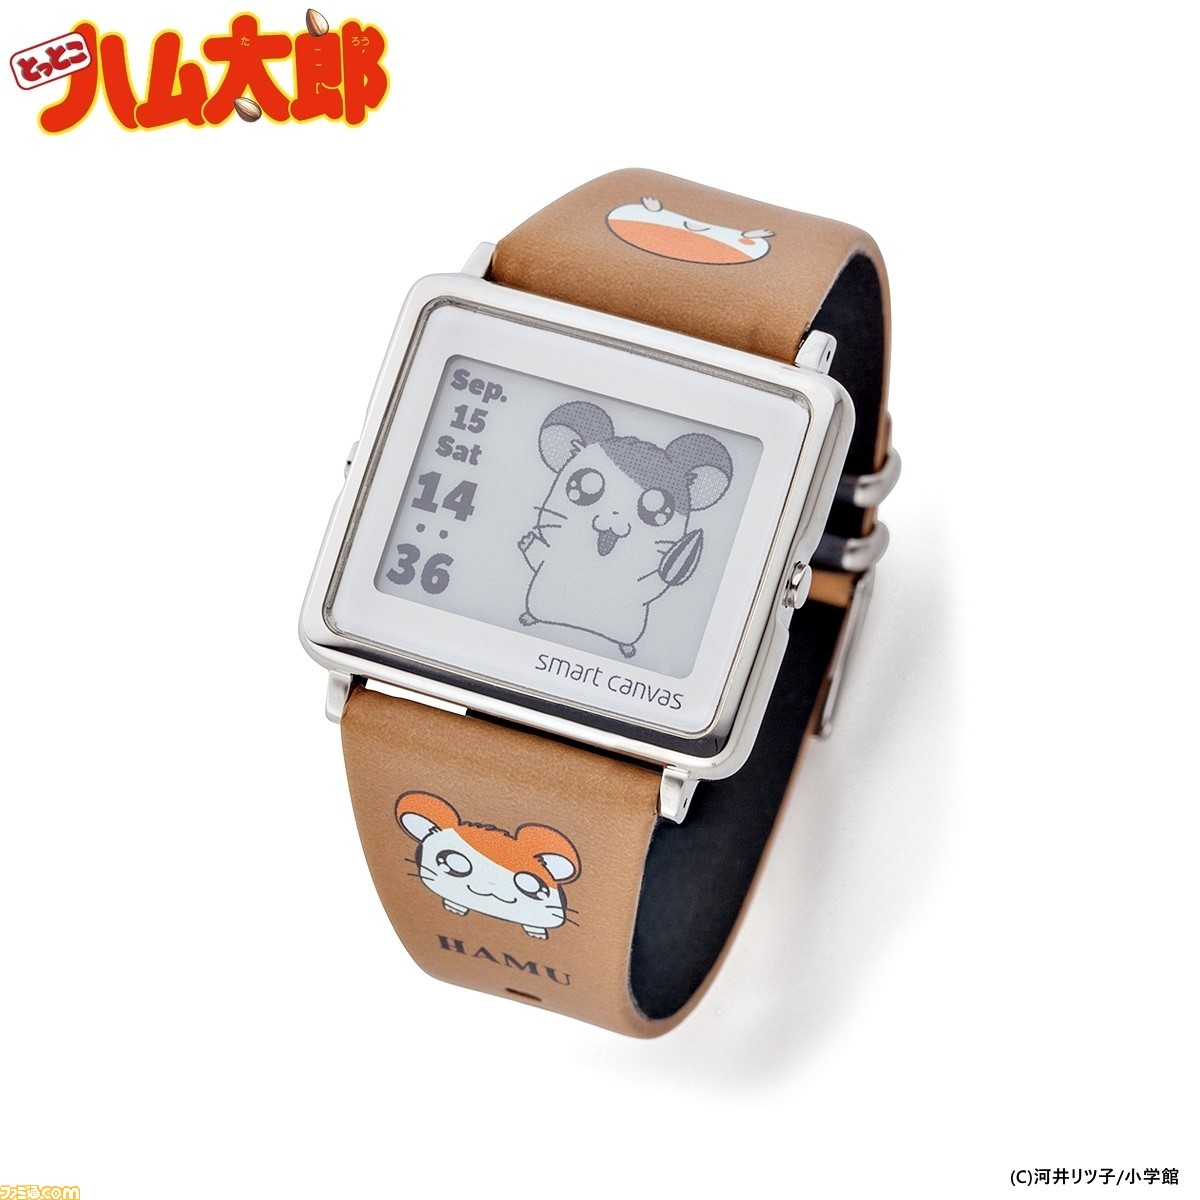 とっとこハム太郎 デジタル腕時計 腕時計ベルト予約受付開始 80枚以上のイラストが日付や時間で切り替わる ファミ通 Com